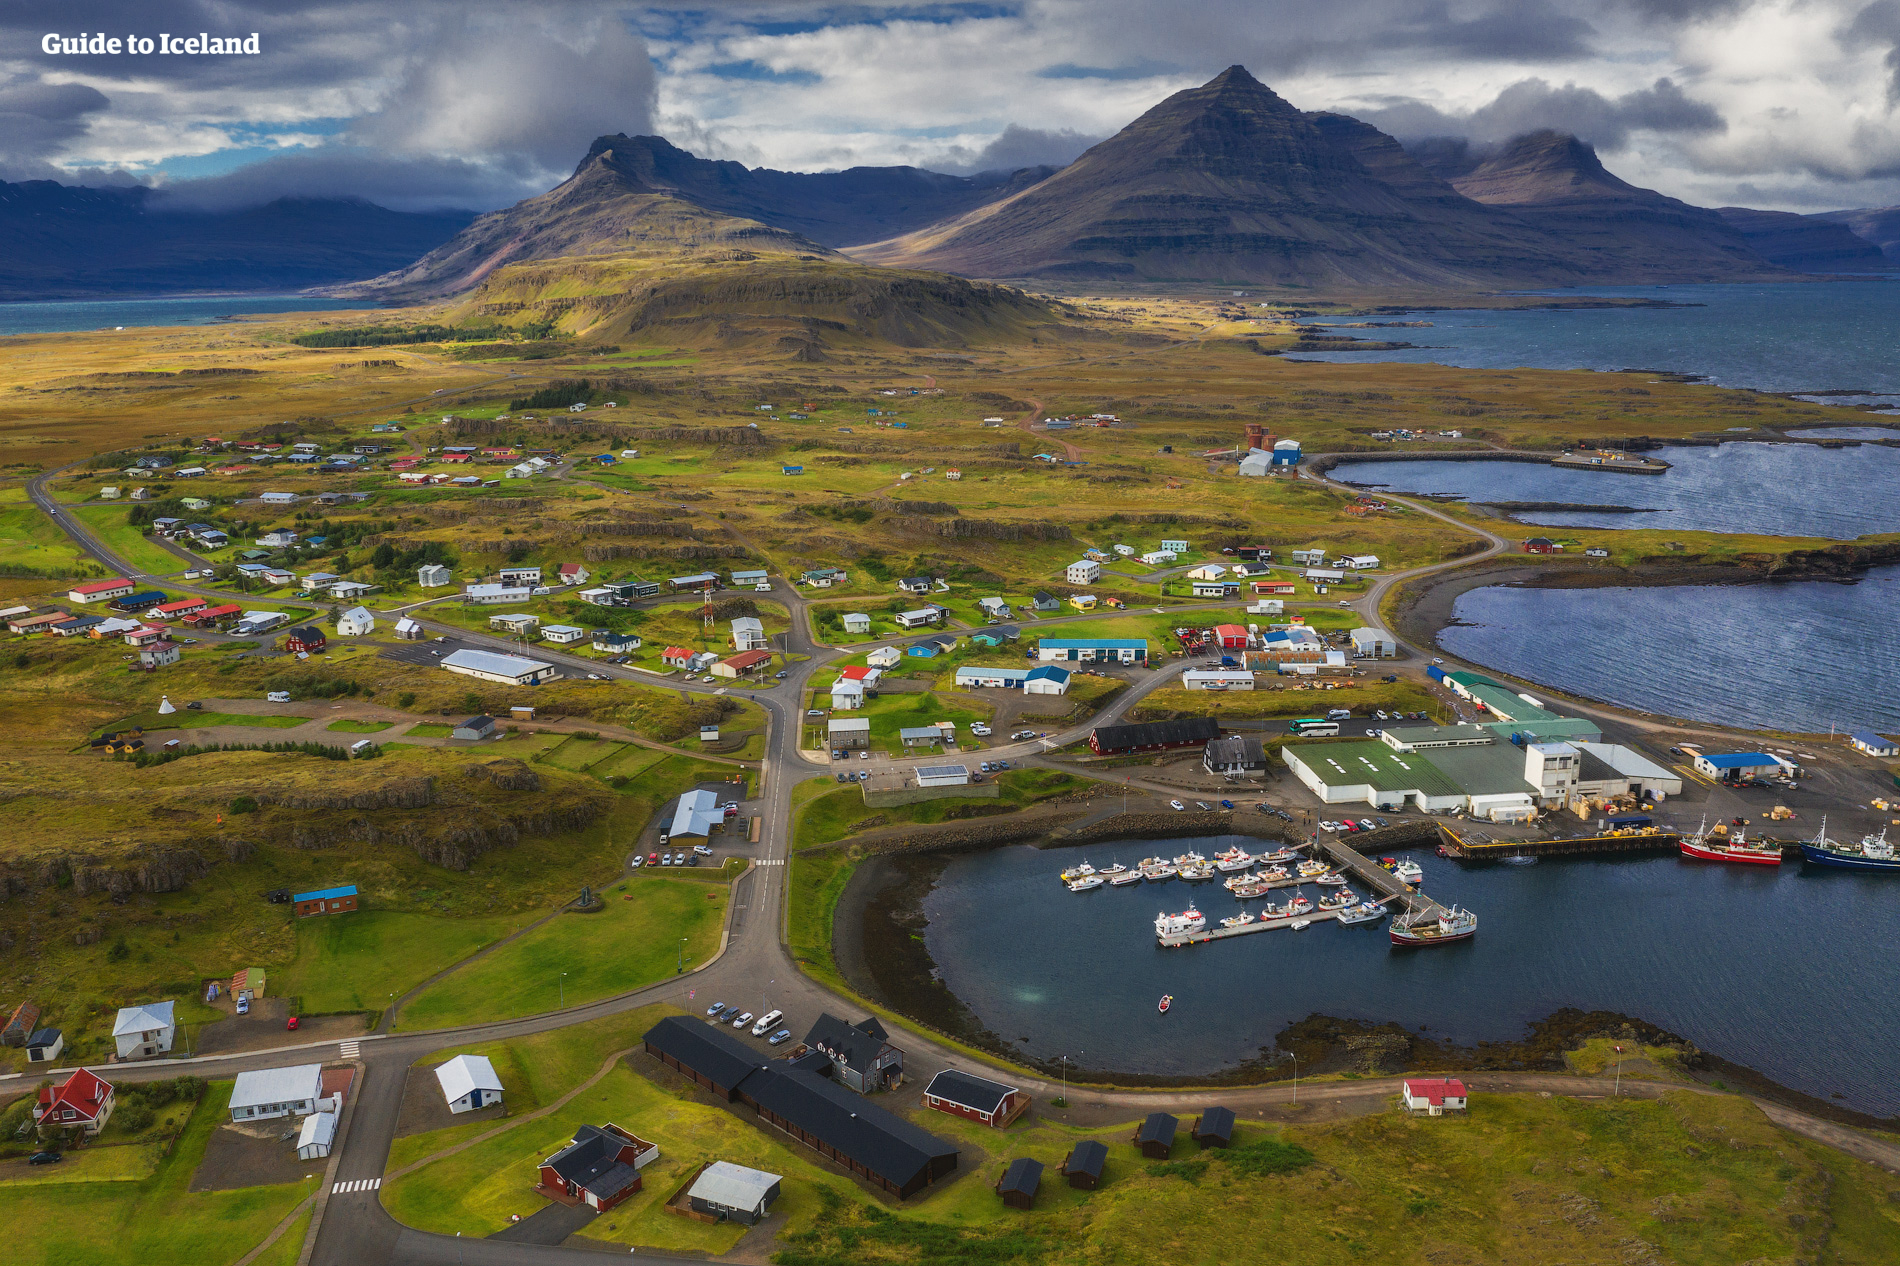 ในทางไอซ์แลนด์ตะวันออก คุณจะได้สำรวจความมหัศจรรย์ทางธรรมชาติและทัศนียภาพที่งดงามในทุกที่ที่คุณไป.